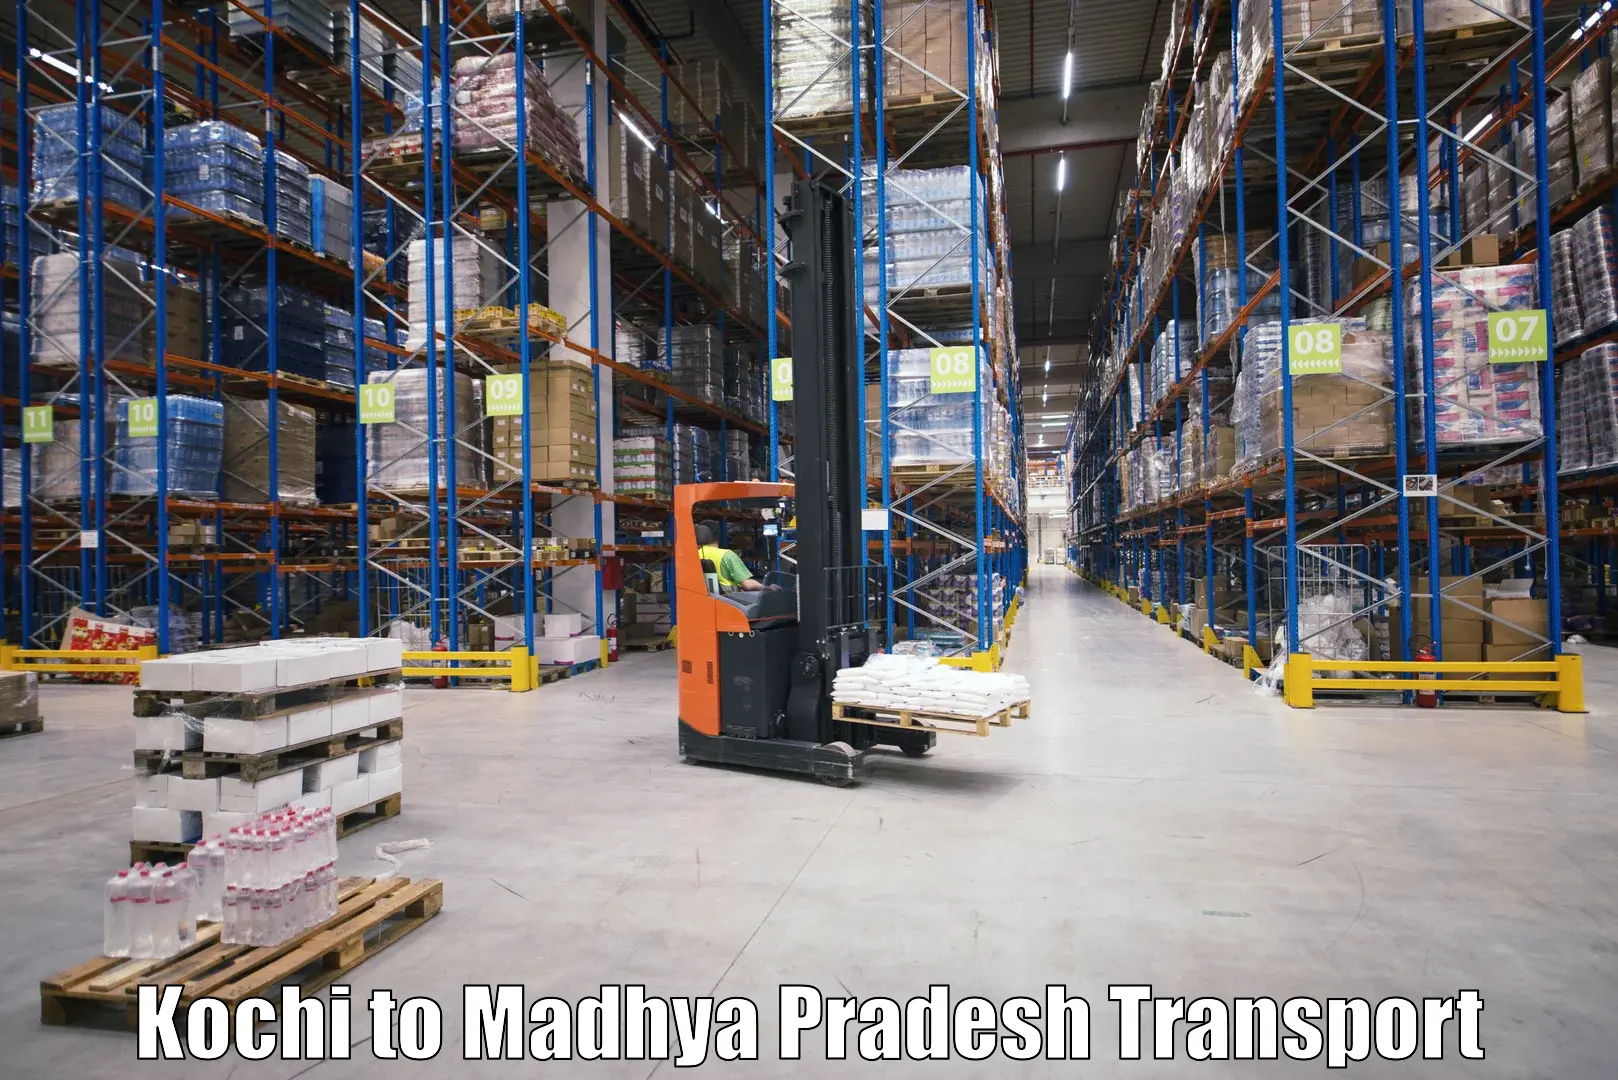 International cargo transportation services Kochi to Madhya Pradesh